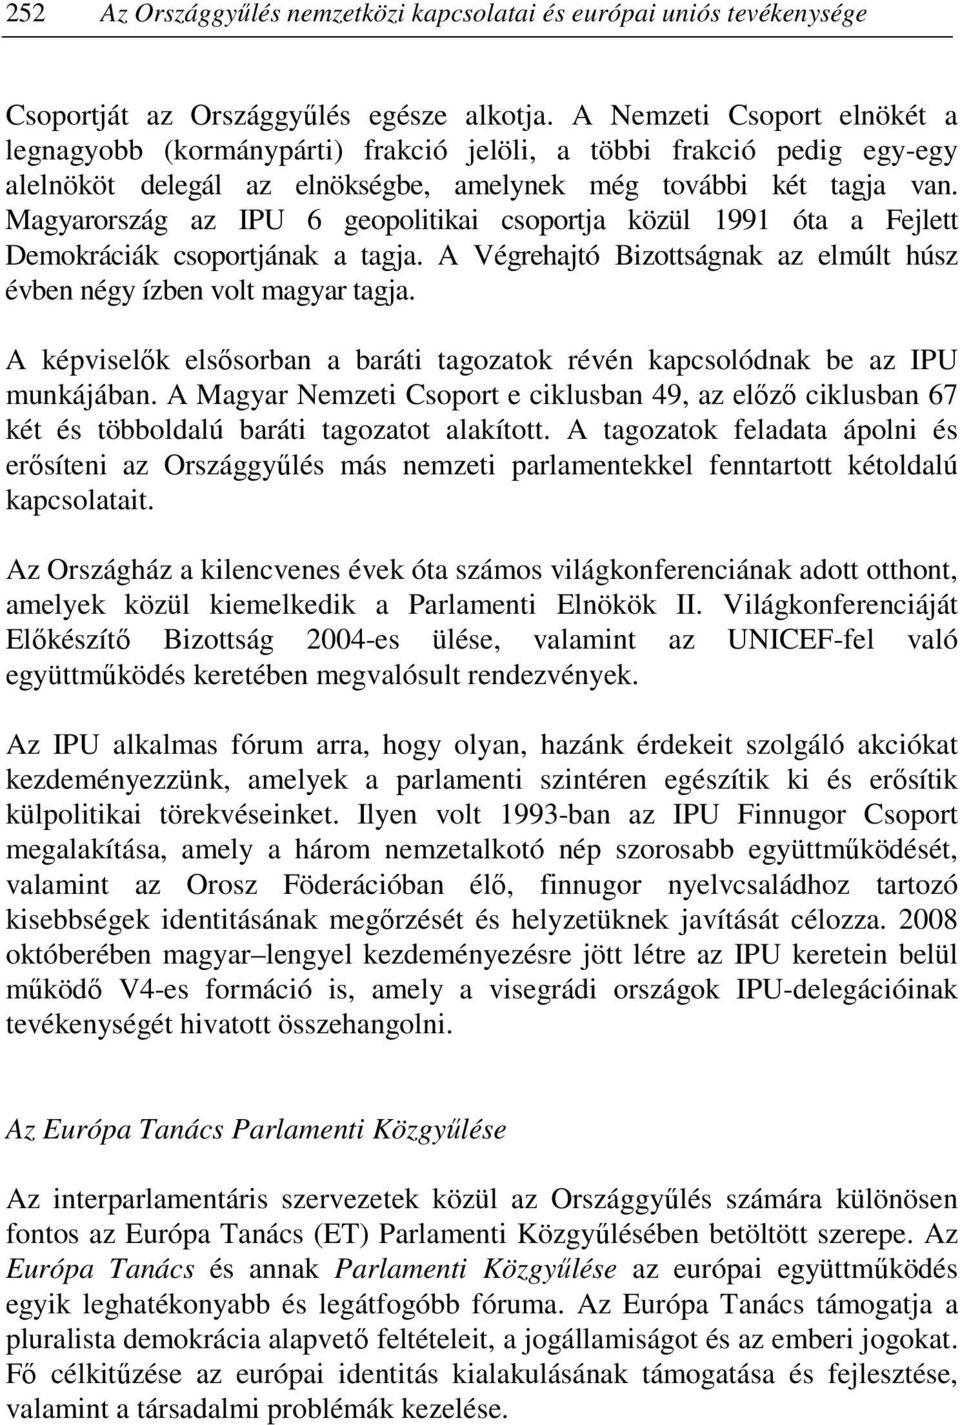 Magyarország az IPU 6 geopolitikai csoportja közül 1991 óta a Fejlett Demokráciák csoportjának a tagja. A Végrehajtó Bizottságnak az elmúlt húsz évben négy ízben volt magyar tagja.